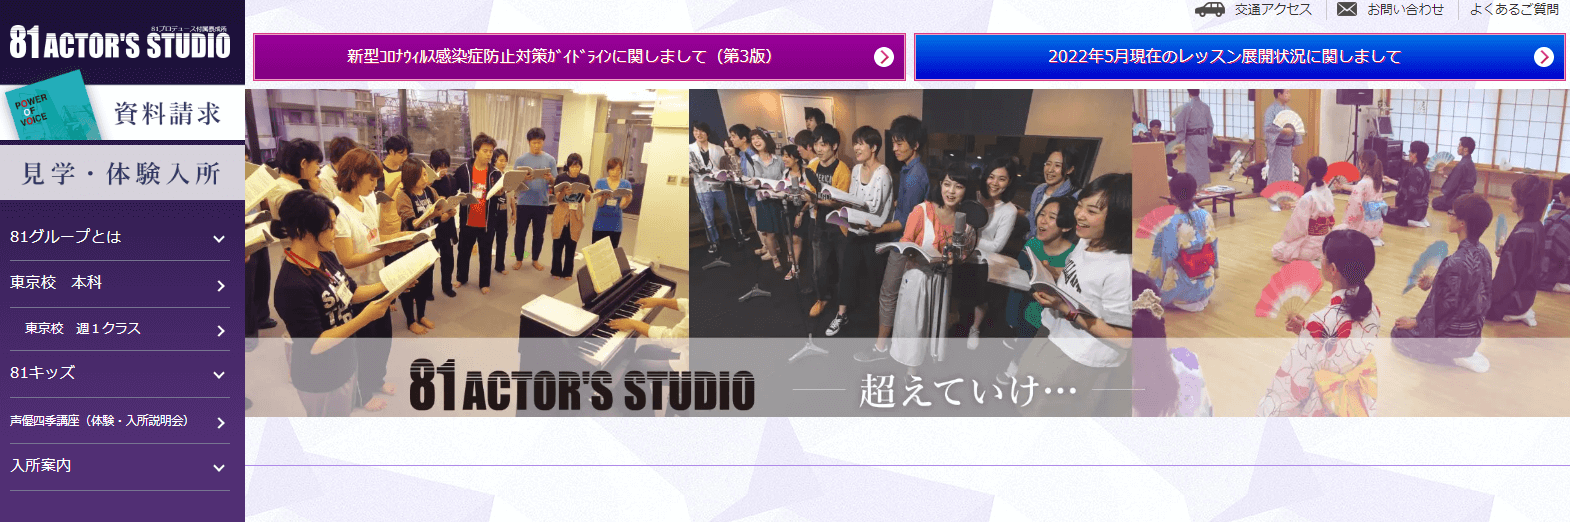 81 Actor’s studio